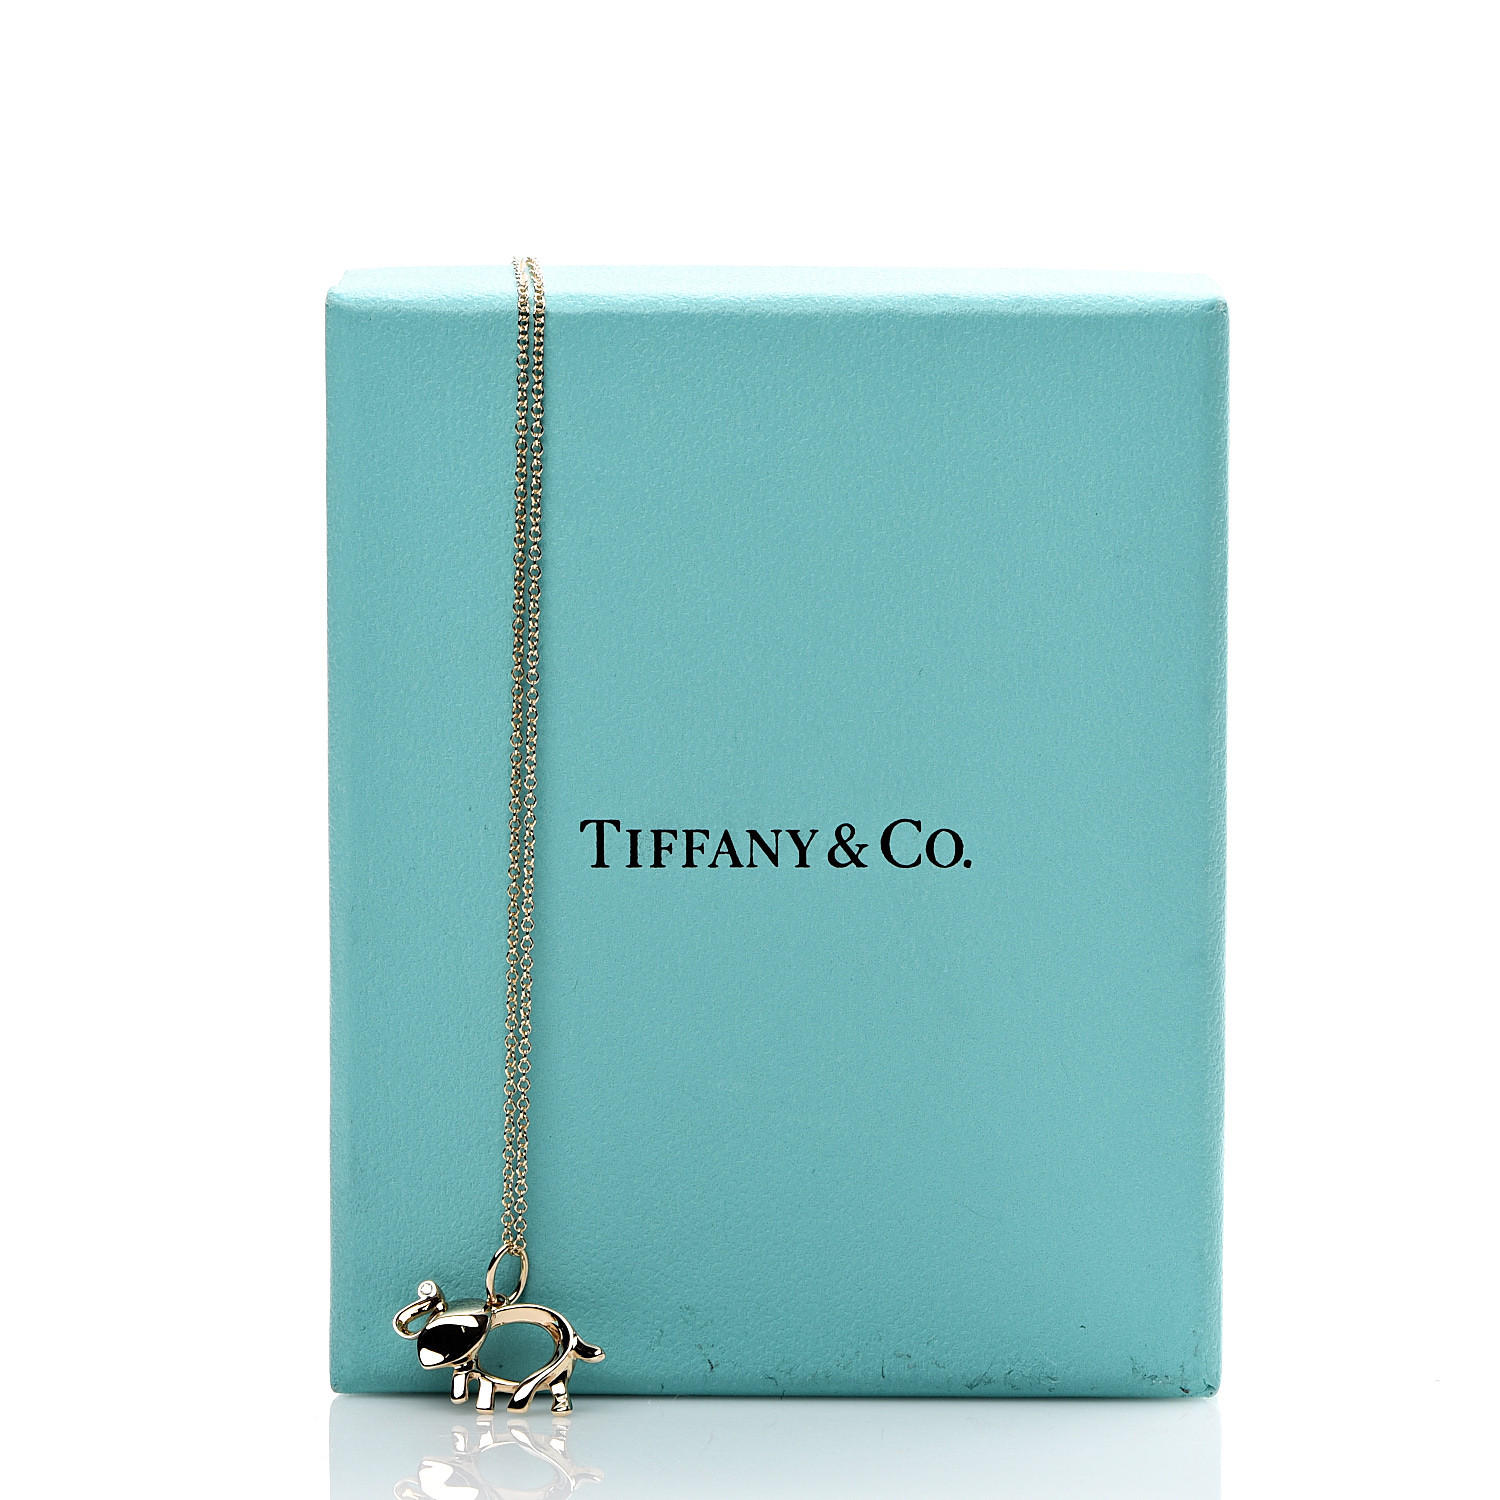 tiffany elephant necklace rose gold